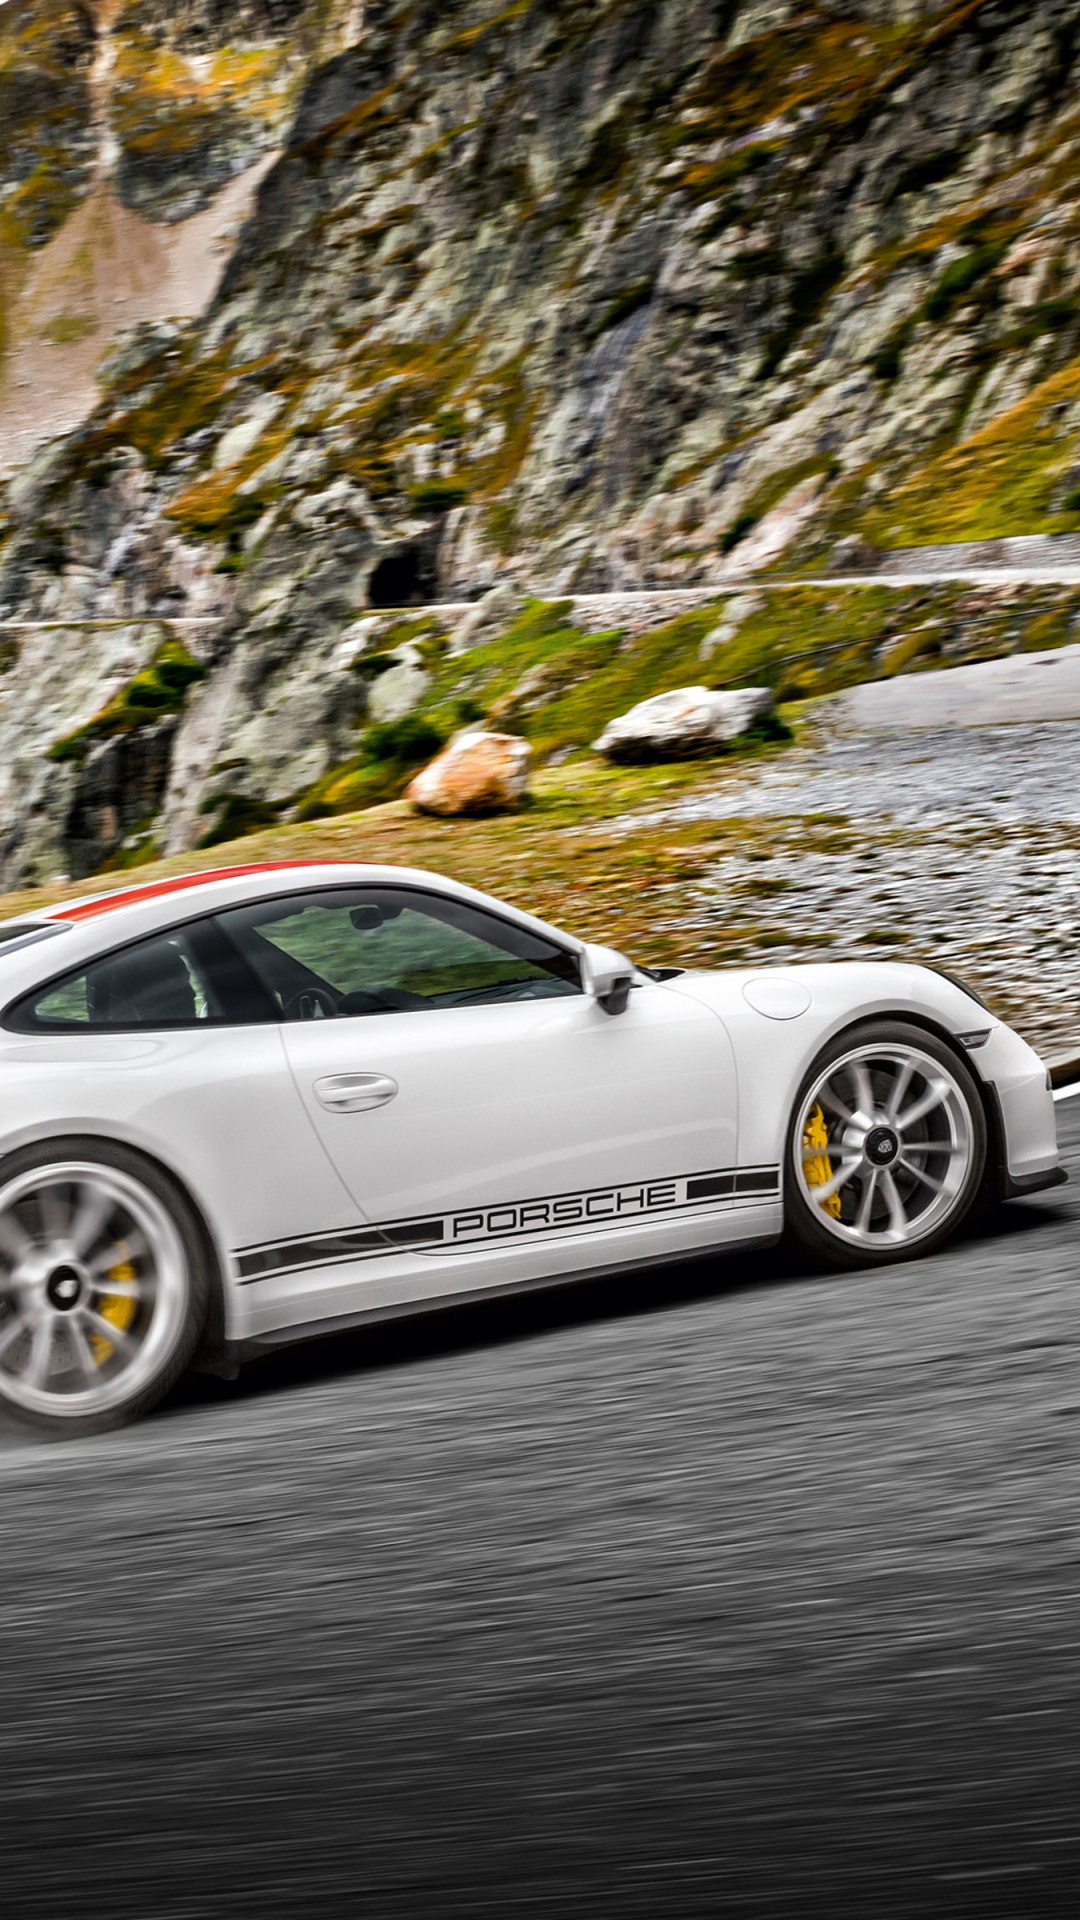 Porsche 911 Blanche Sur Route. Wallpaper in 1080x1920 Resolution